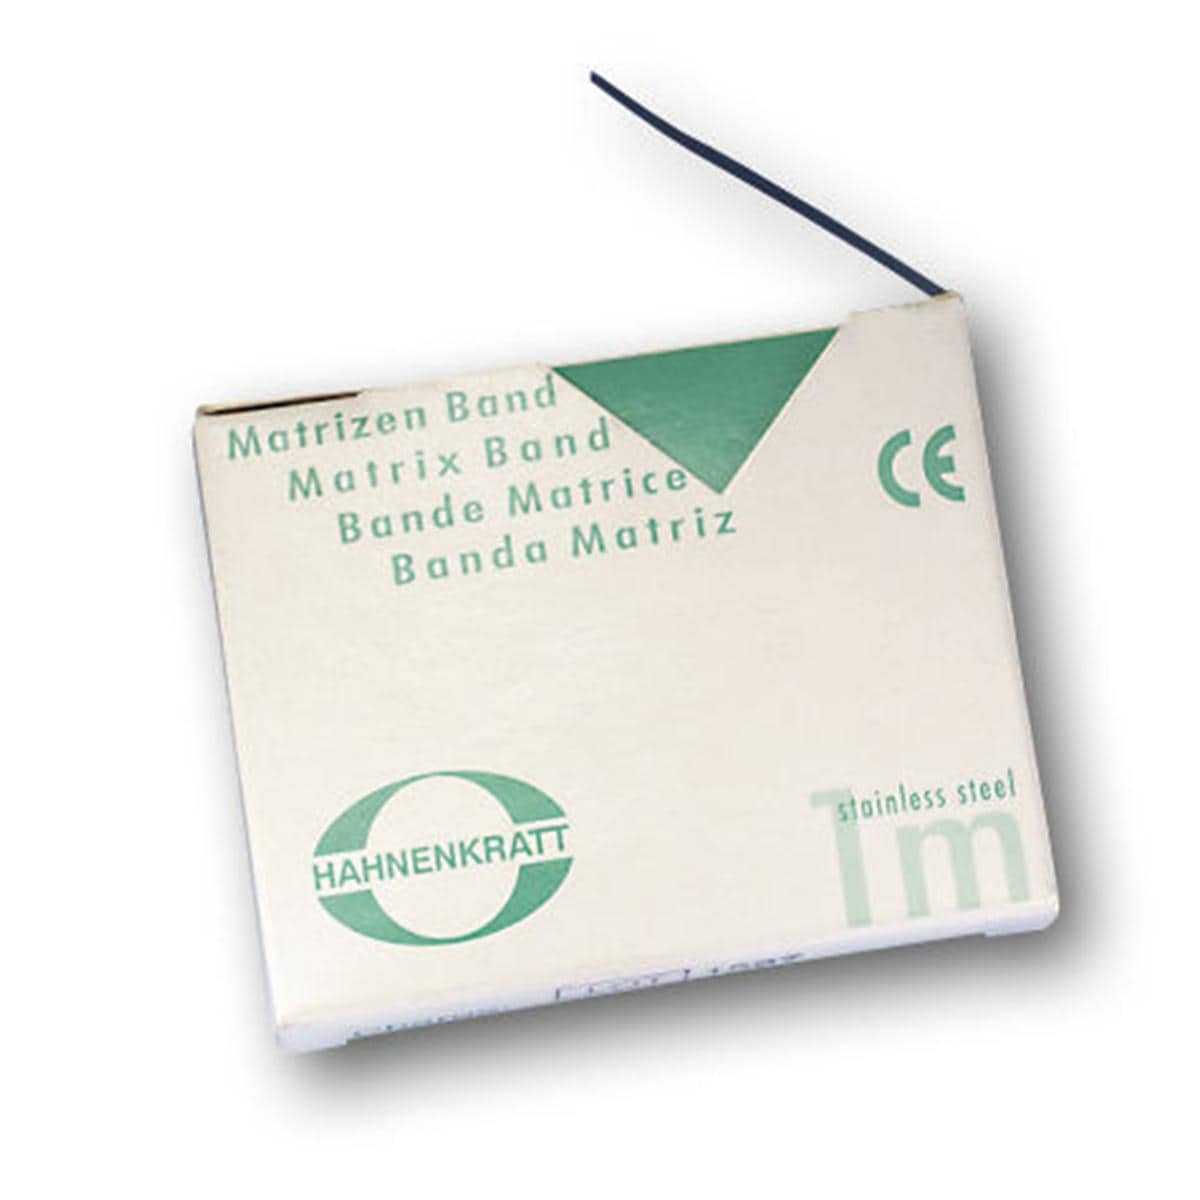 Matrizenband Hahnenkratt - Rolle 3 m - Breite 7 mm, Stärke 0,05 mm